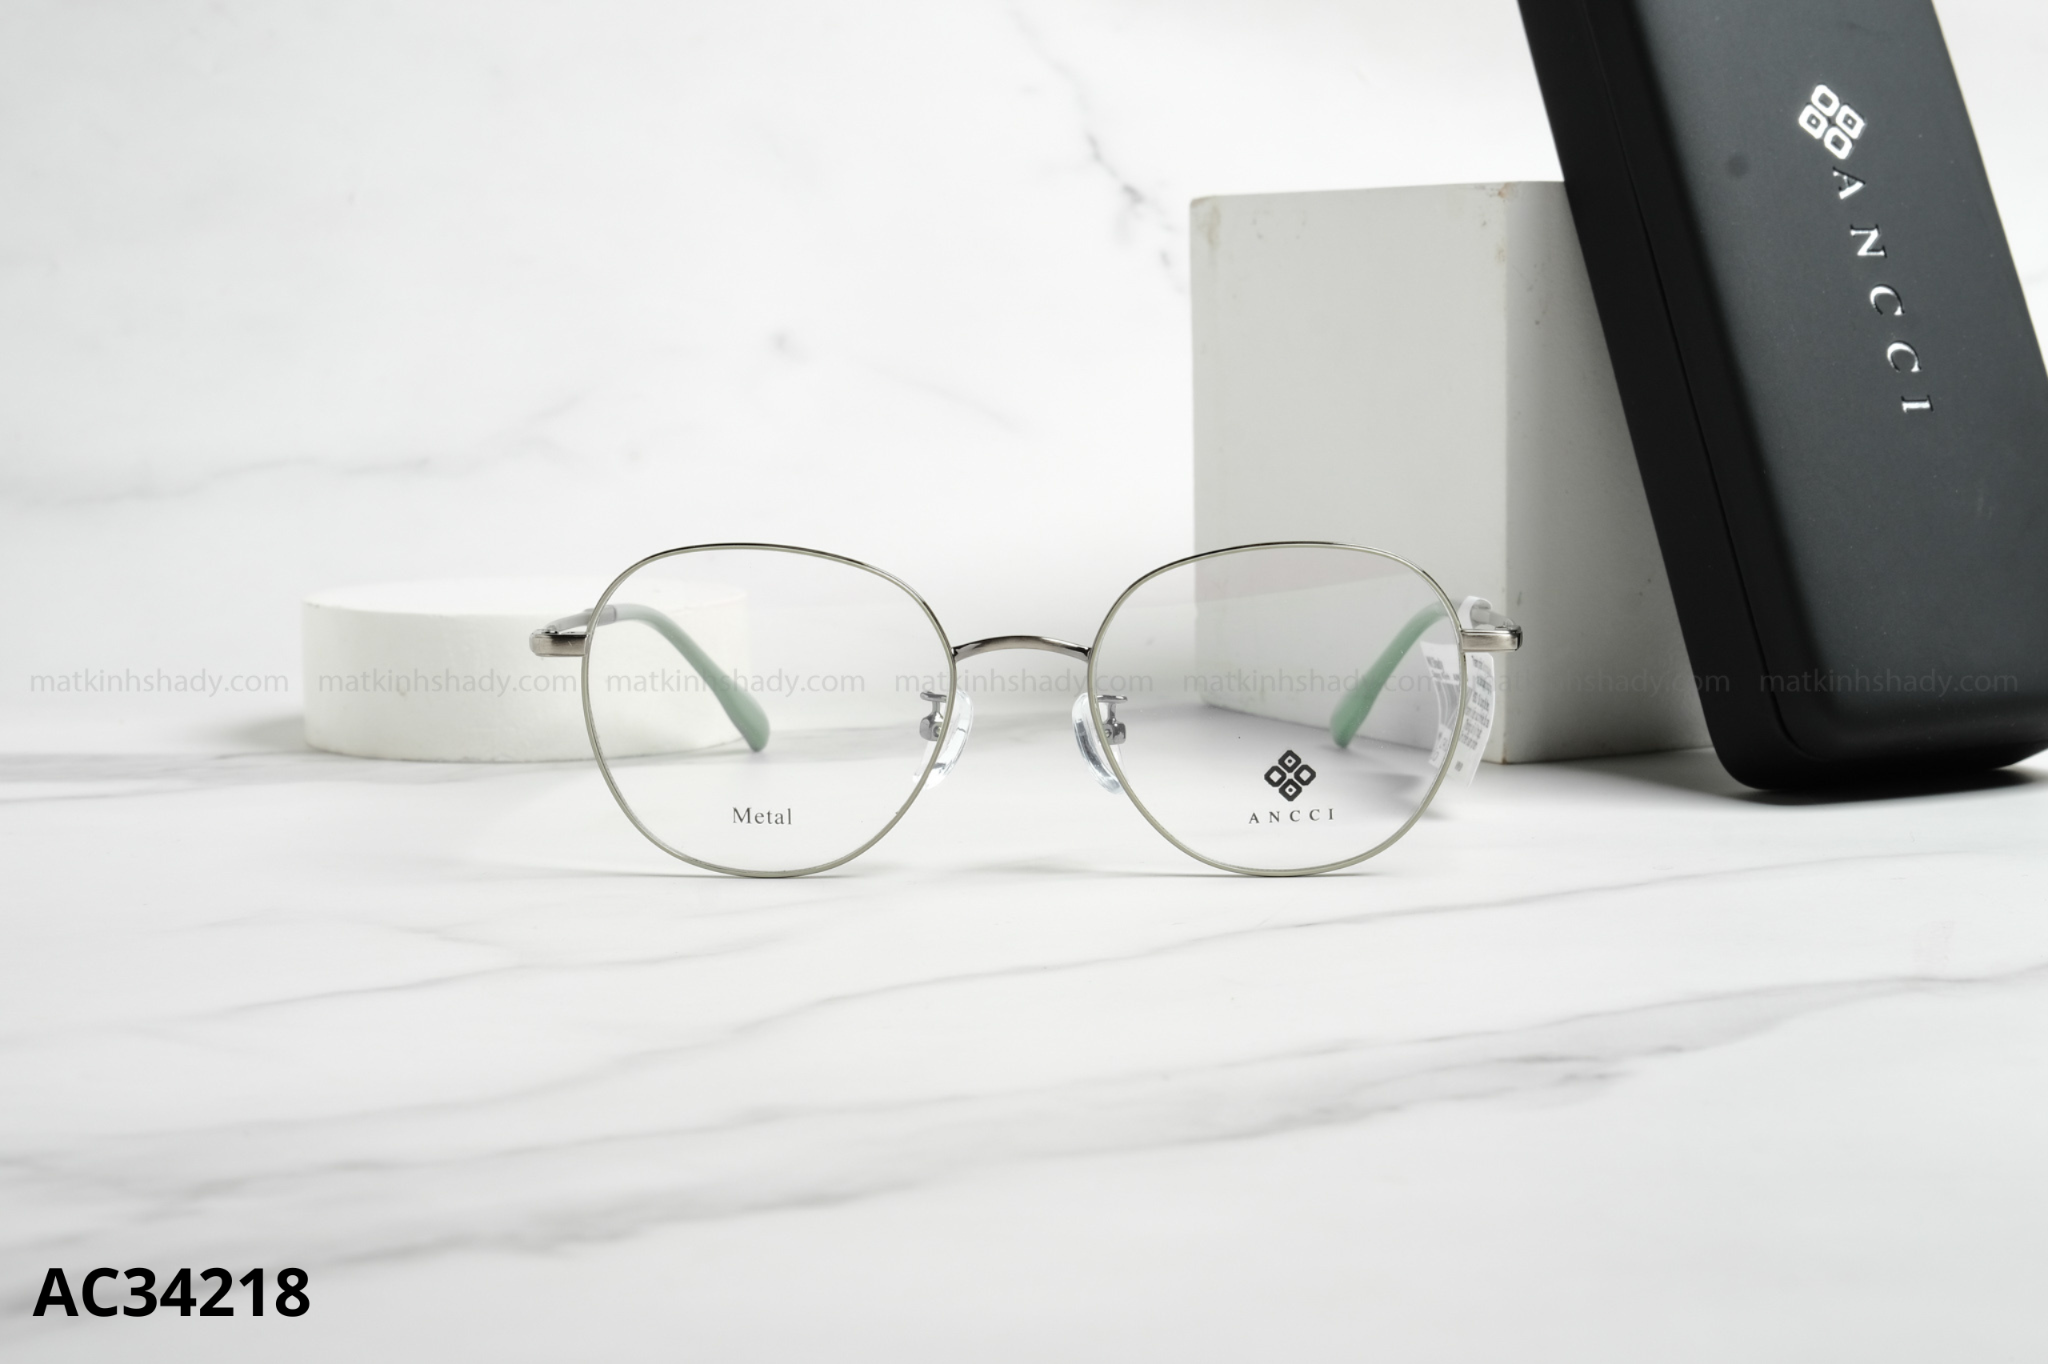  ANCCI Eyewear - Glasses - AC34218 